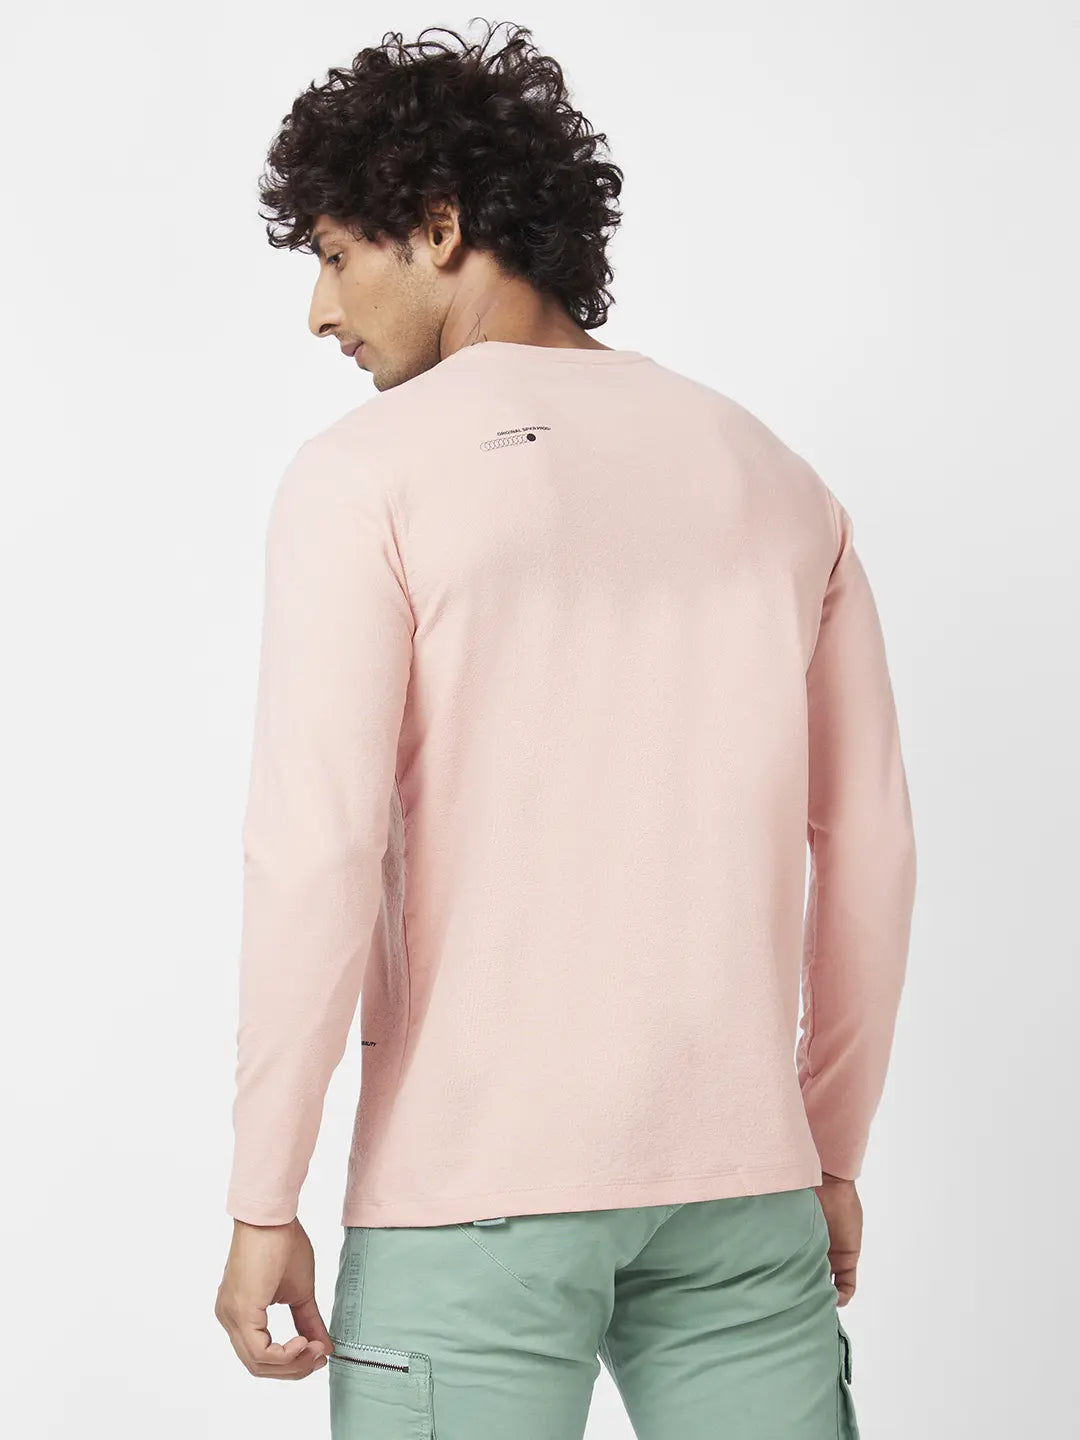 Spykar Men Peach Pink Blended Slim Fit Full Sleeve Round Neck Plain Tshirt